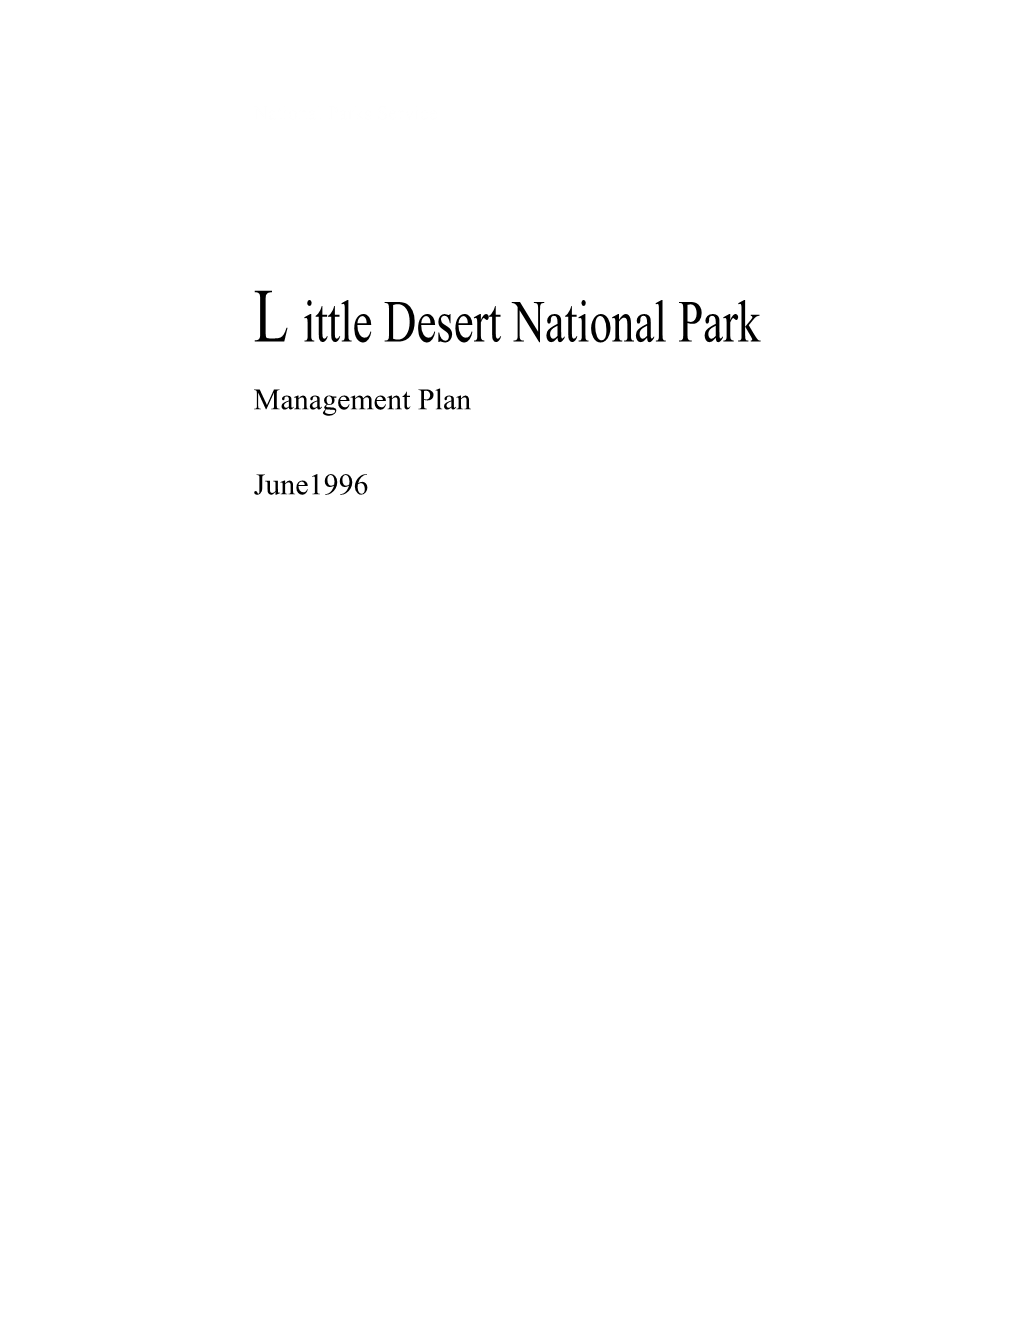 Littel Desert National Park Management Plan